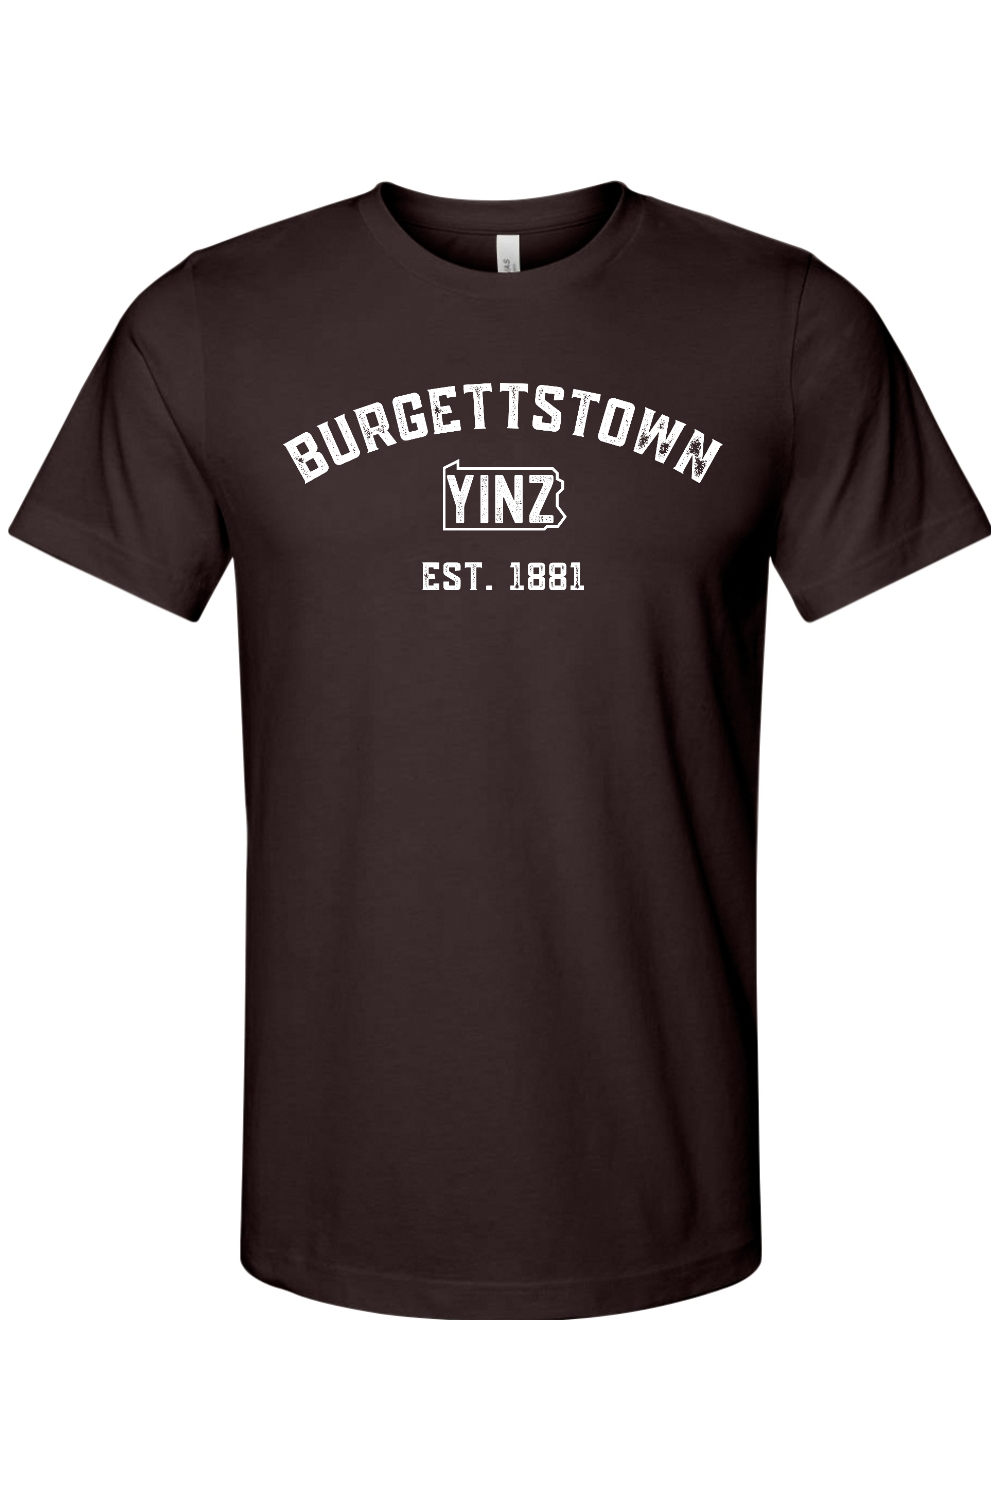 Burgettstown Yinzylvania - Yinzylvania